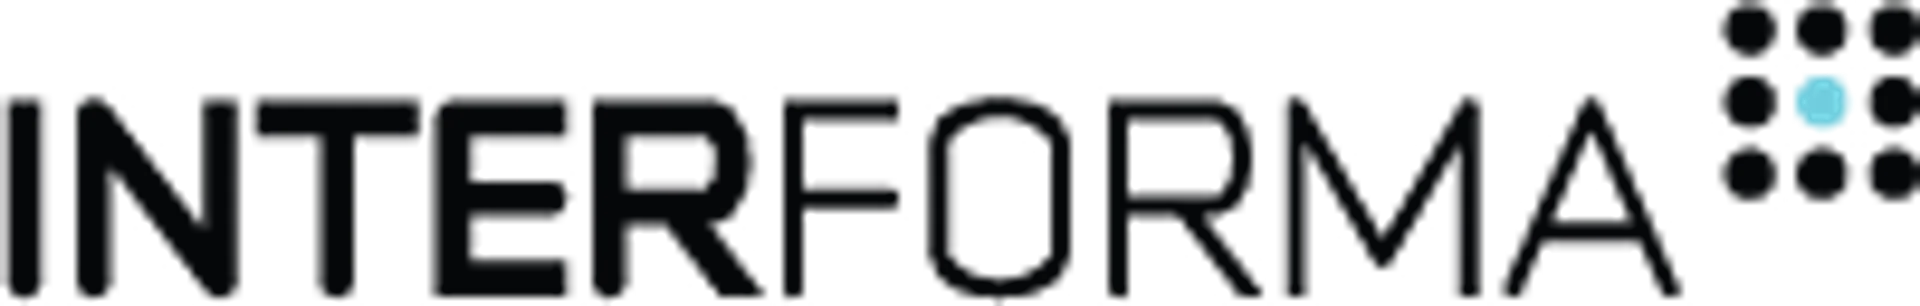 INTERFORMA logo de folhetos